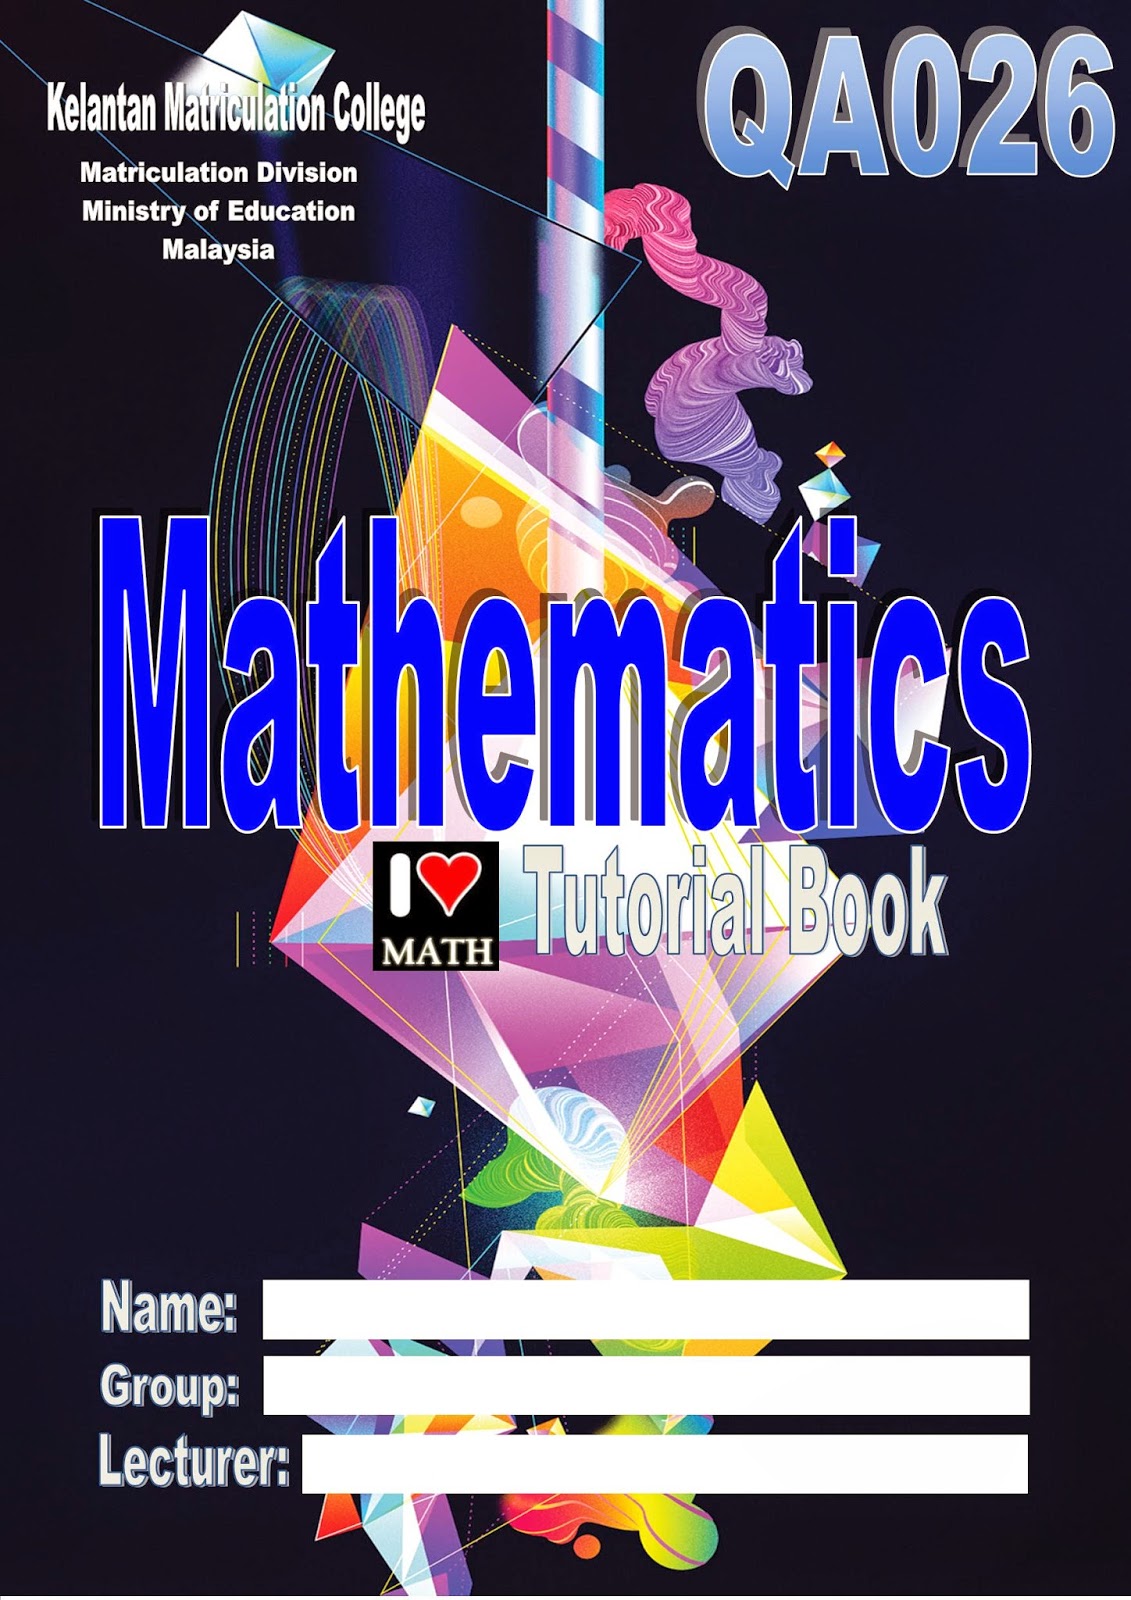 TEMANSTUDY: Contoh Rekaan Kulit Buku Tutorial Matematik 